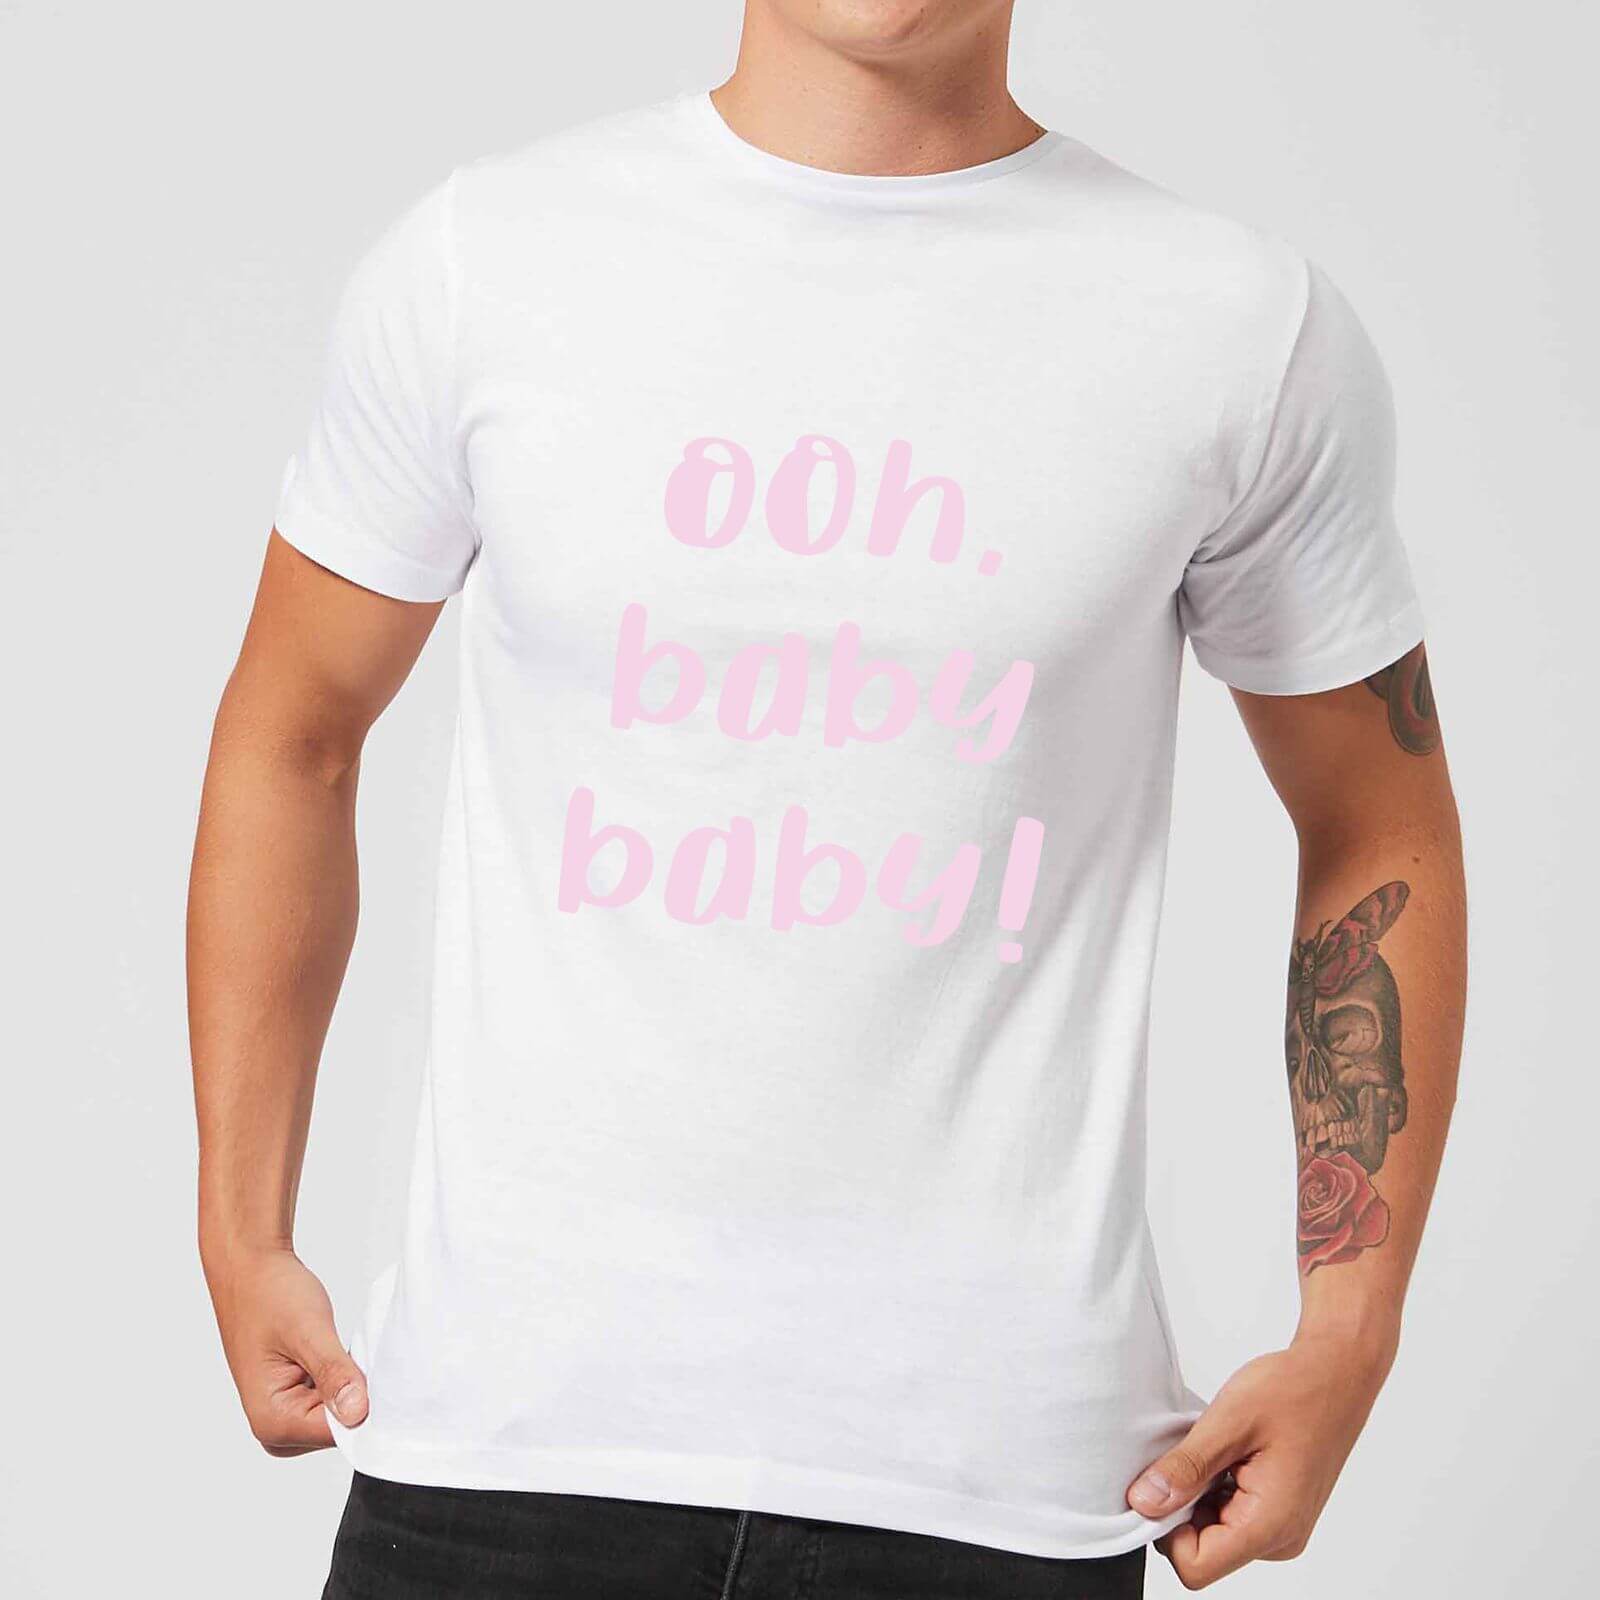 Ooh Baby Baby Men's T-Shirt - White - S